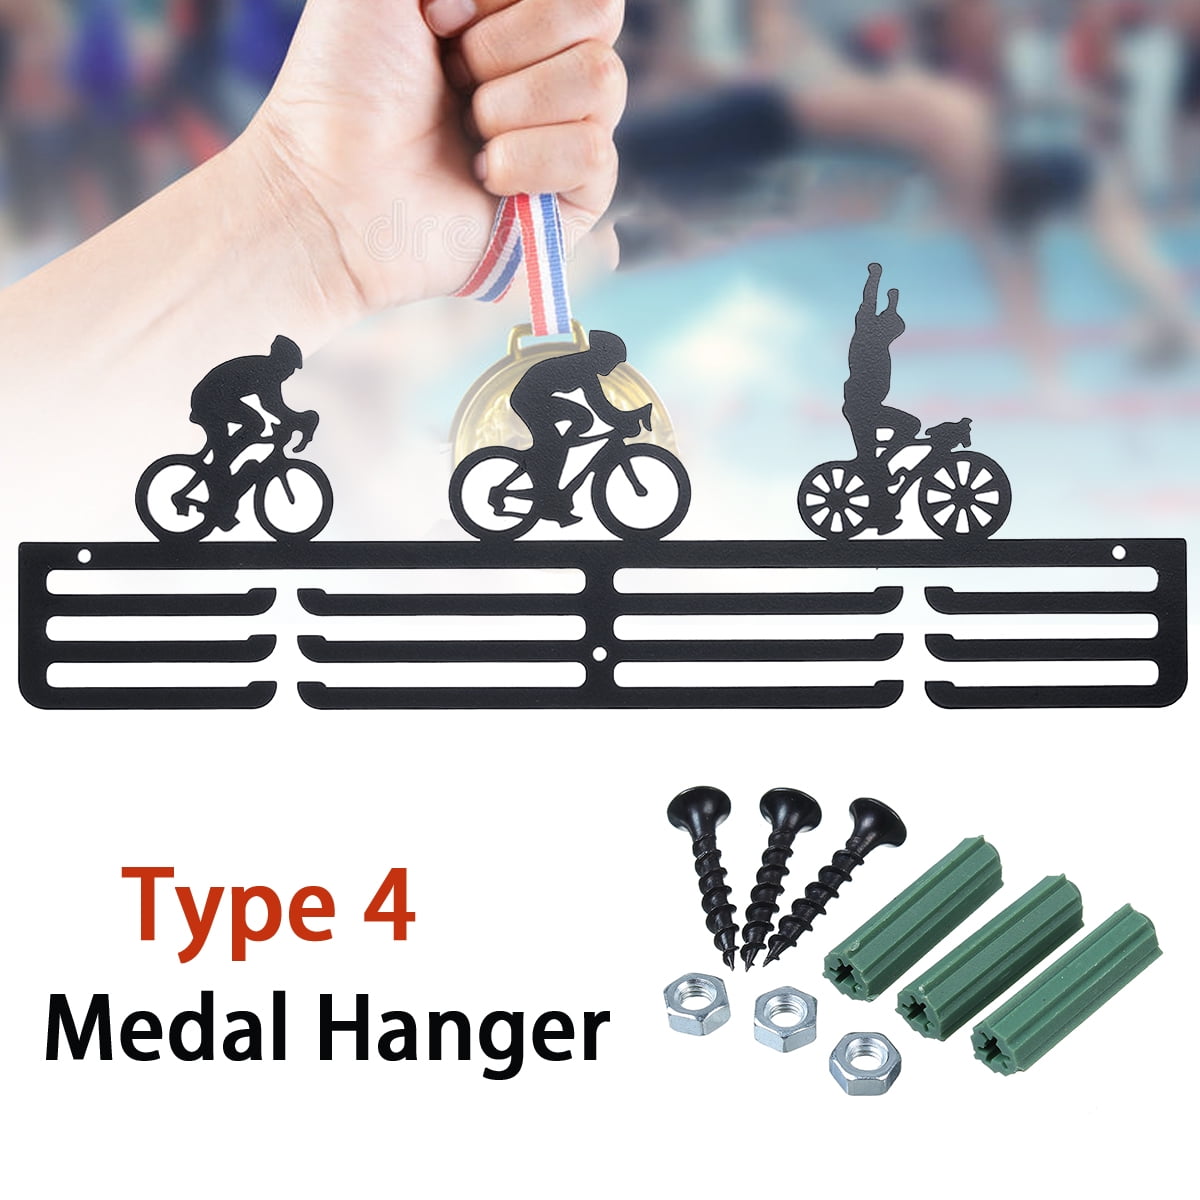 Level 6 Gymnastics Gymnasts Medal Sports Display Hanger Holder Rack for Wall 